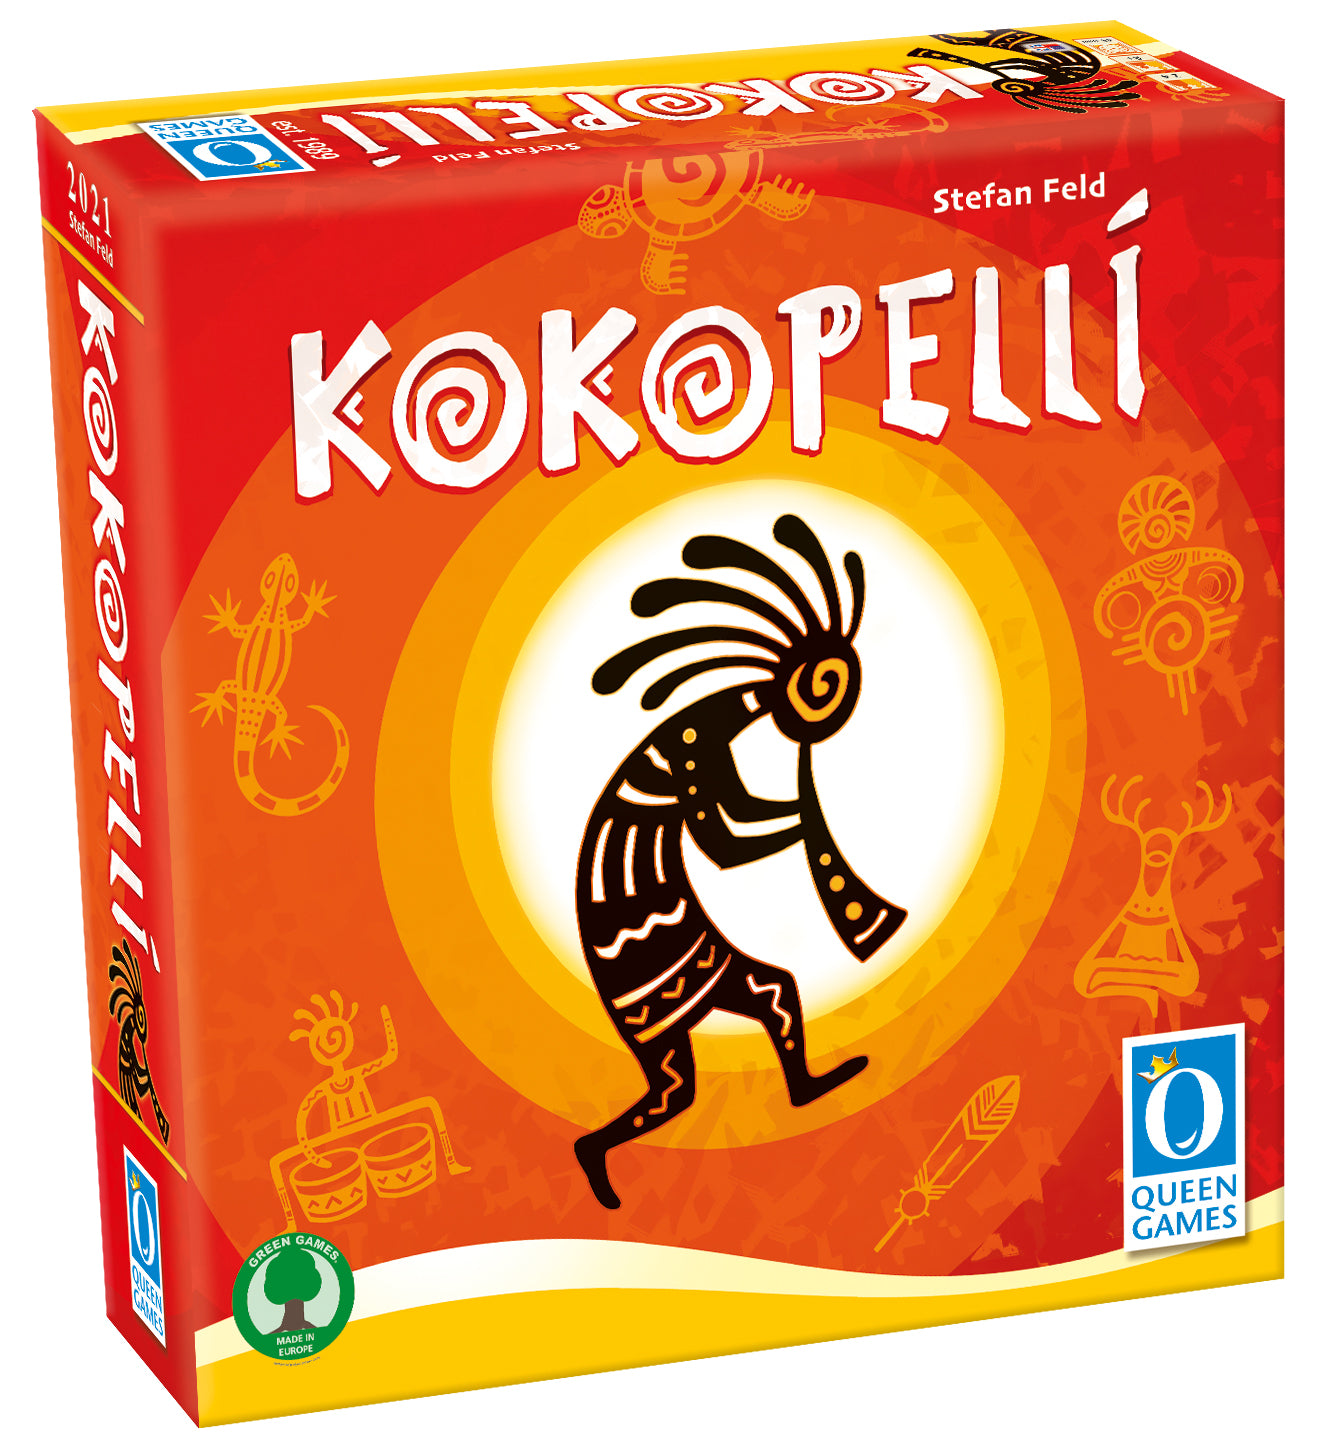 Kokopelli - Kickstarter Edition